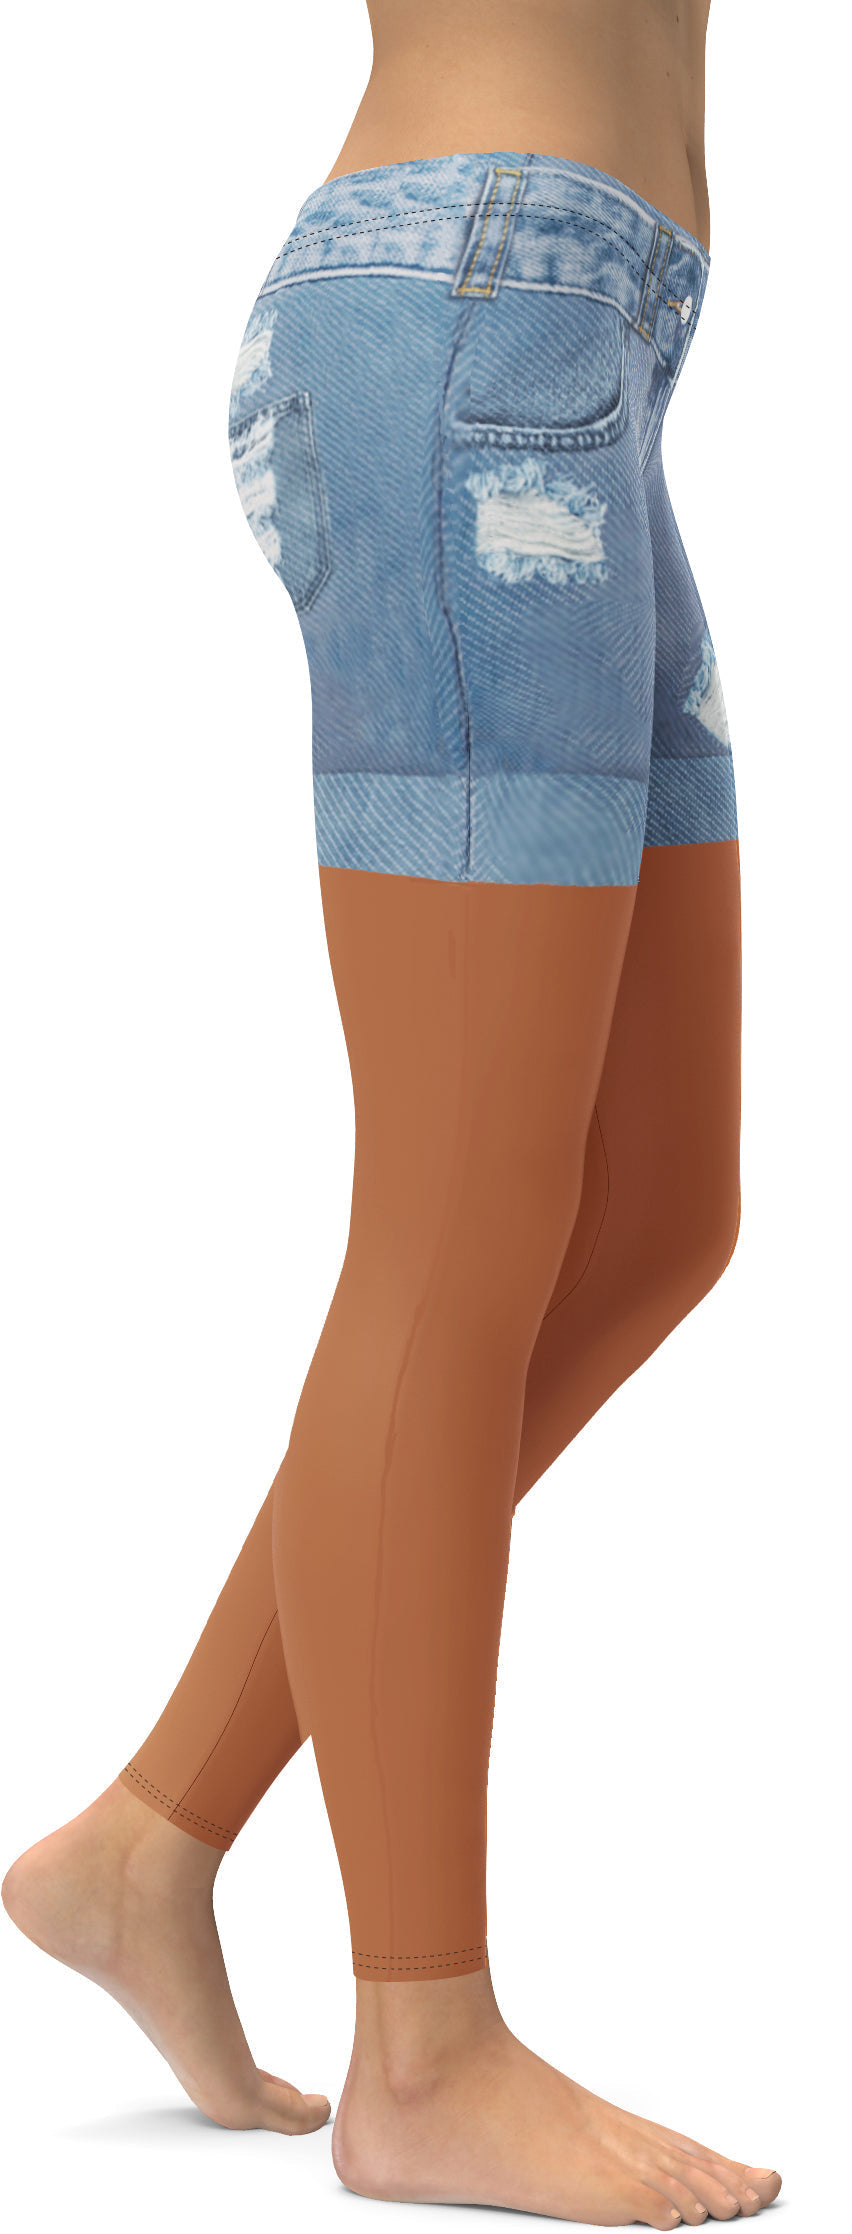 Medium Brown Denim Shorts Leggings